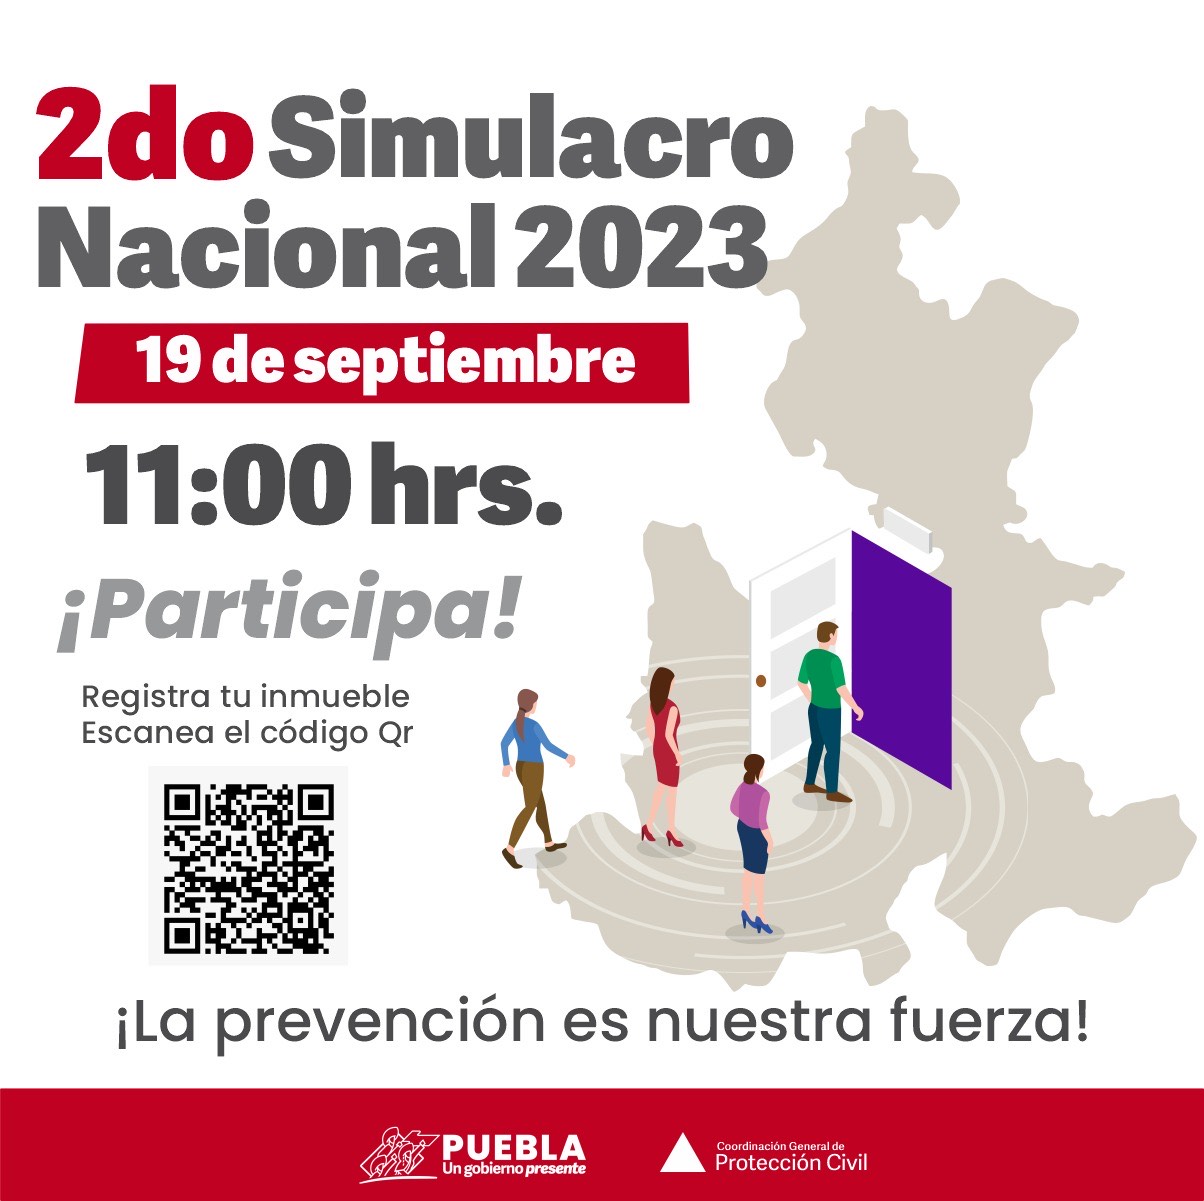 El 19 de septiembre habrá marcosimulacro en Puebla, confirmó Andrés Villegas